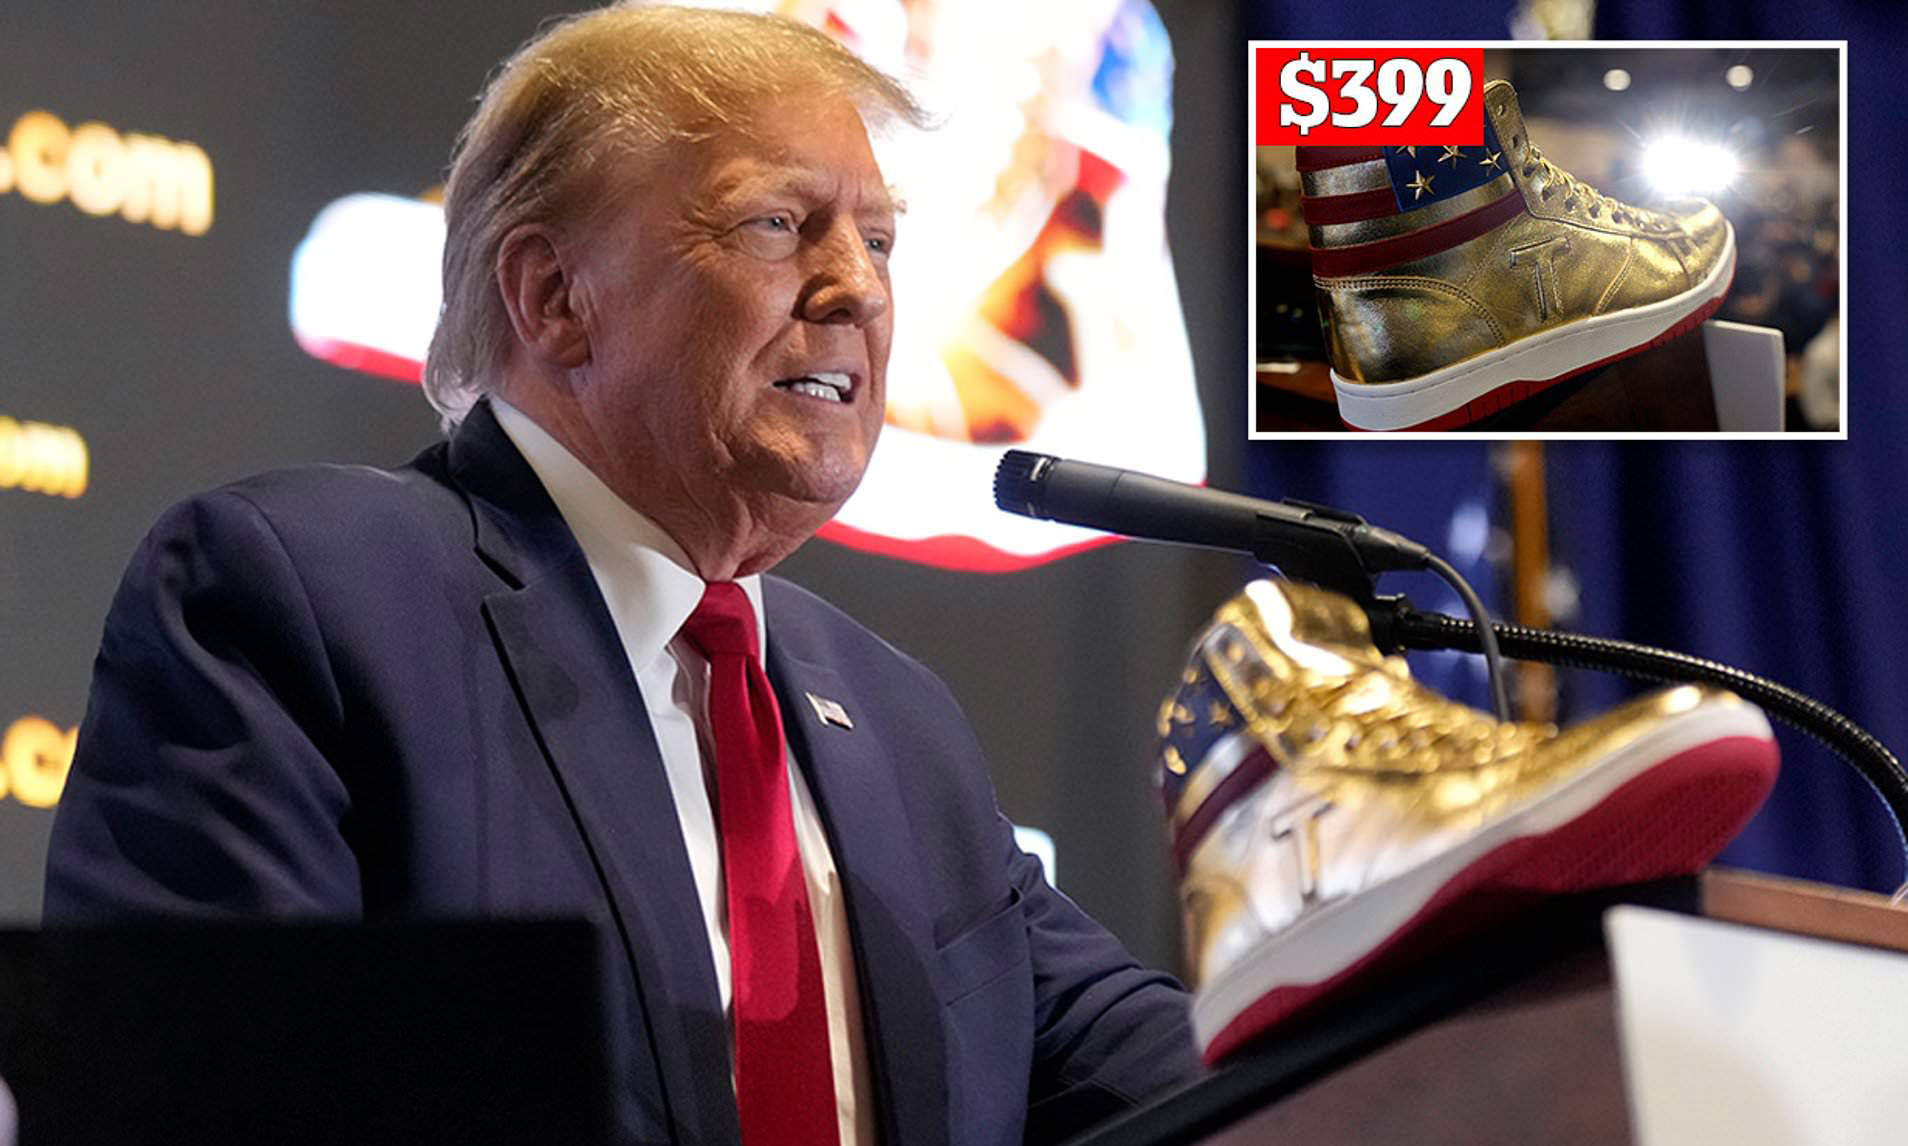 Trump Sneakers $399 Never Surrender JPP Blank Meme Template